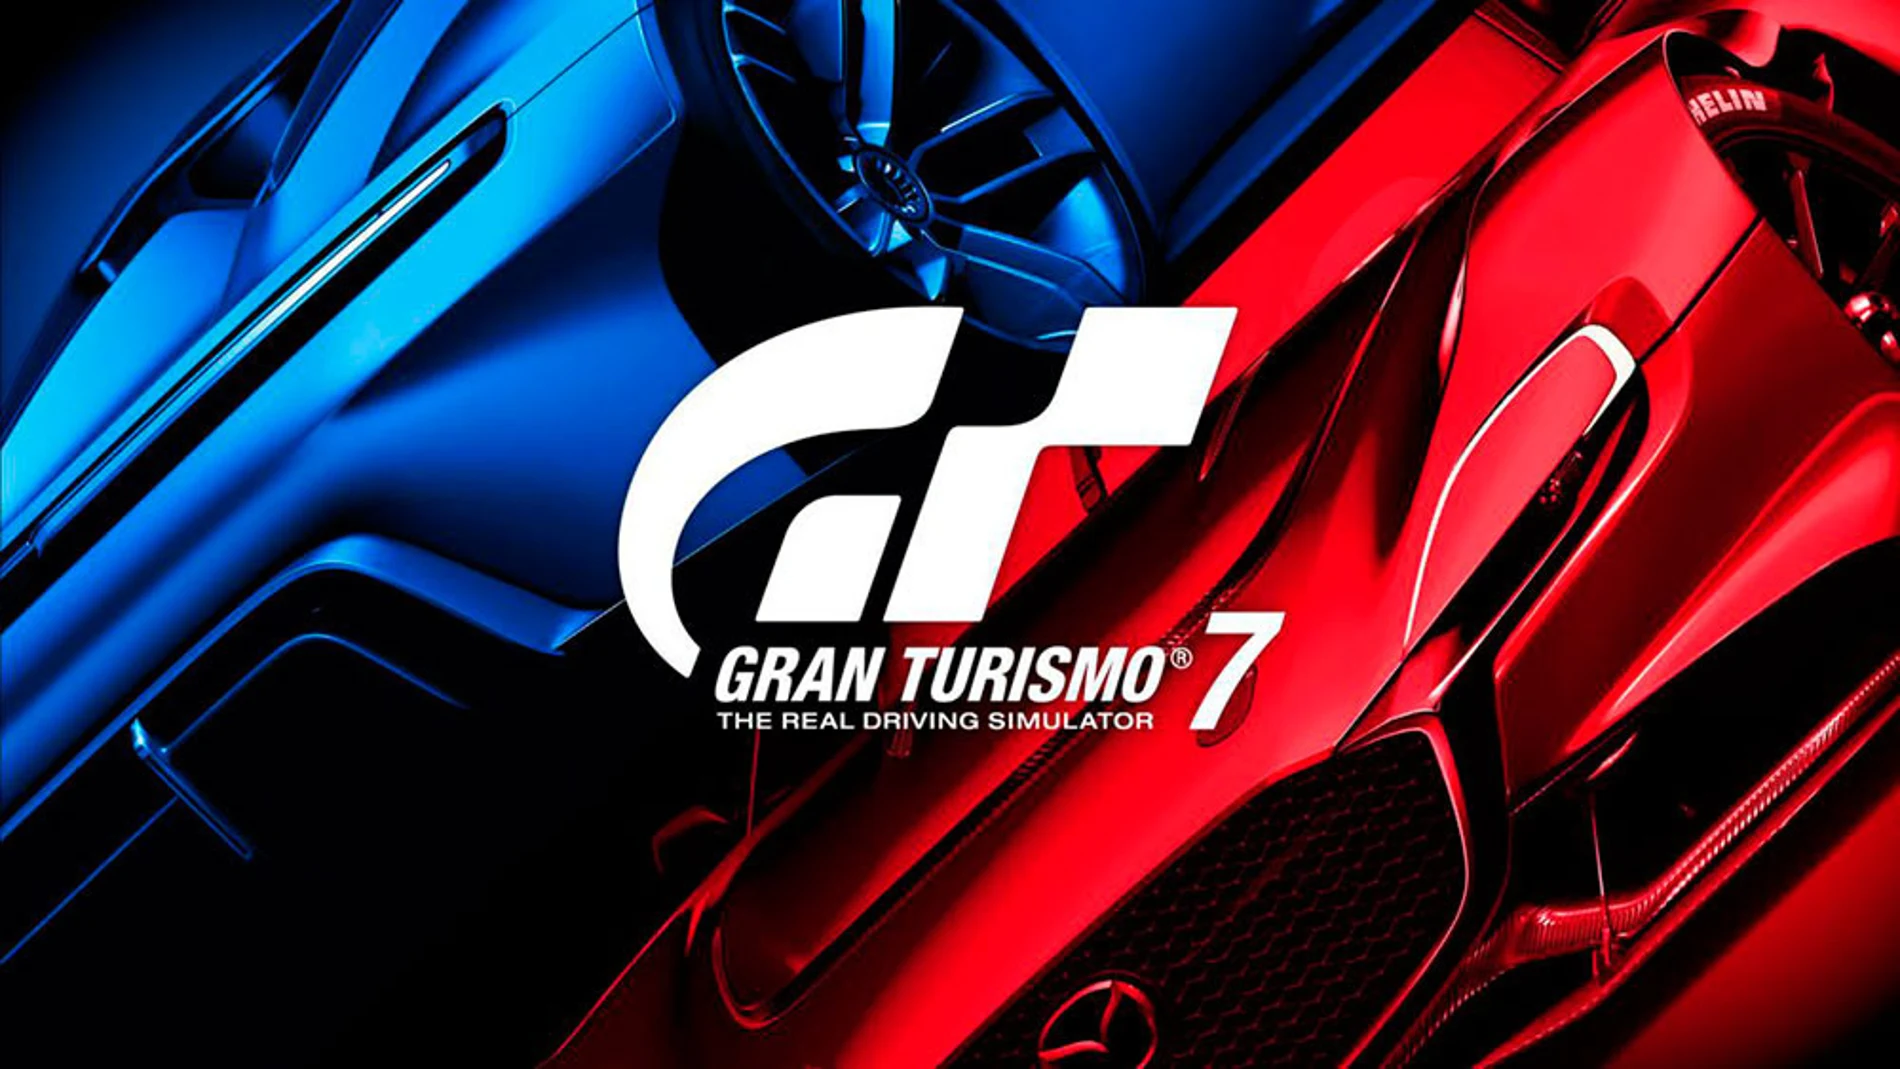 La serie Gran Turismo ha cumplido 25 años en 2022.